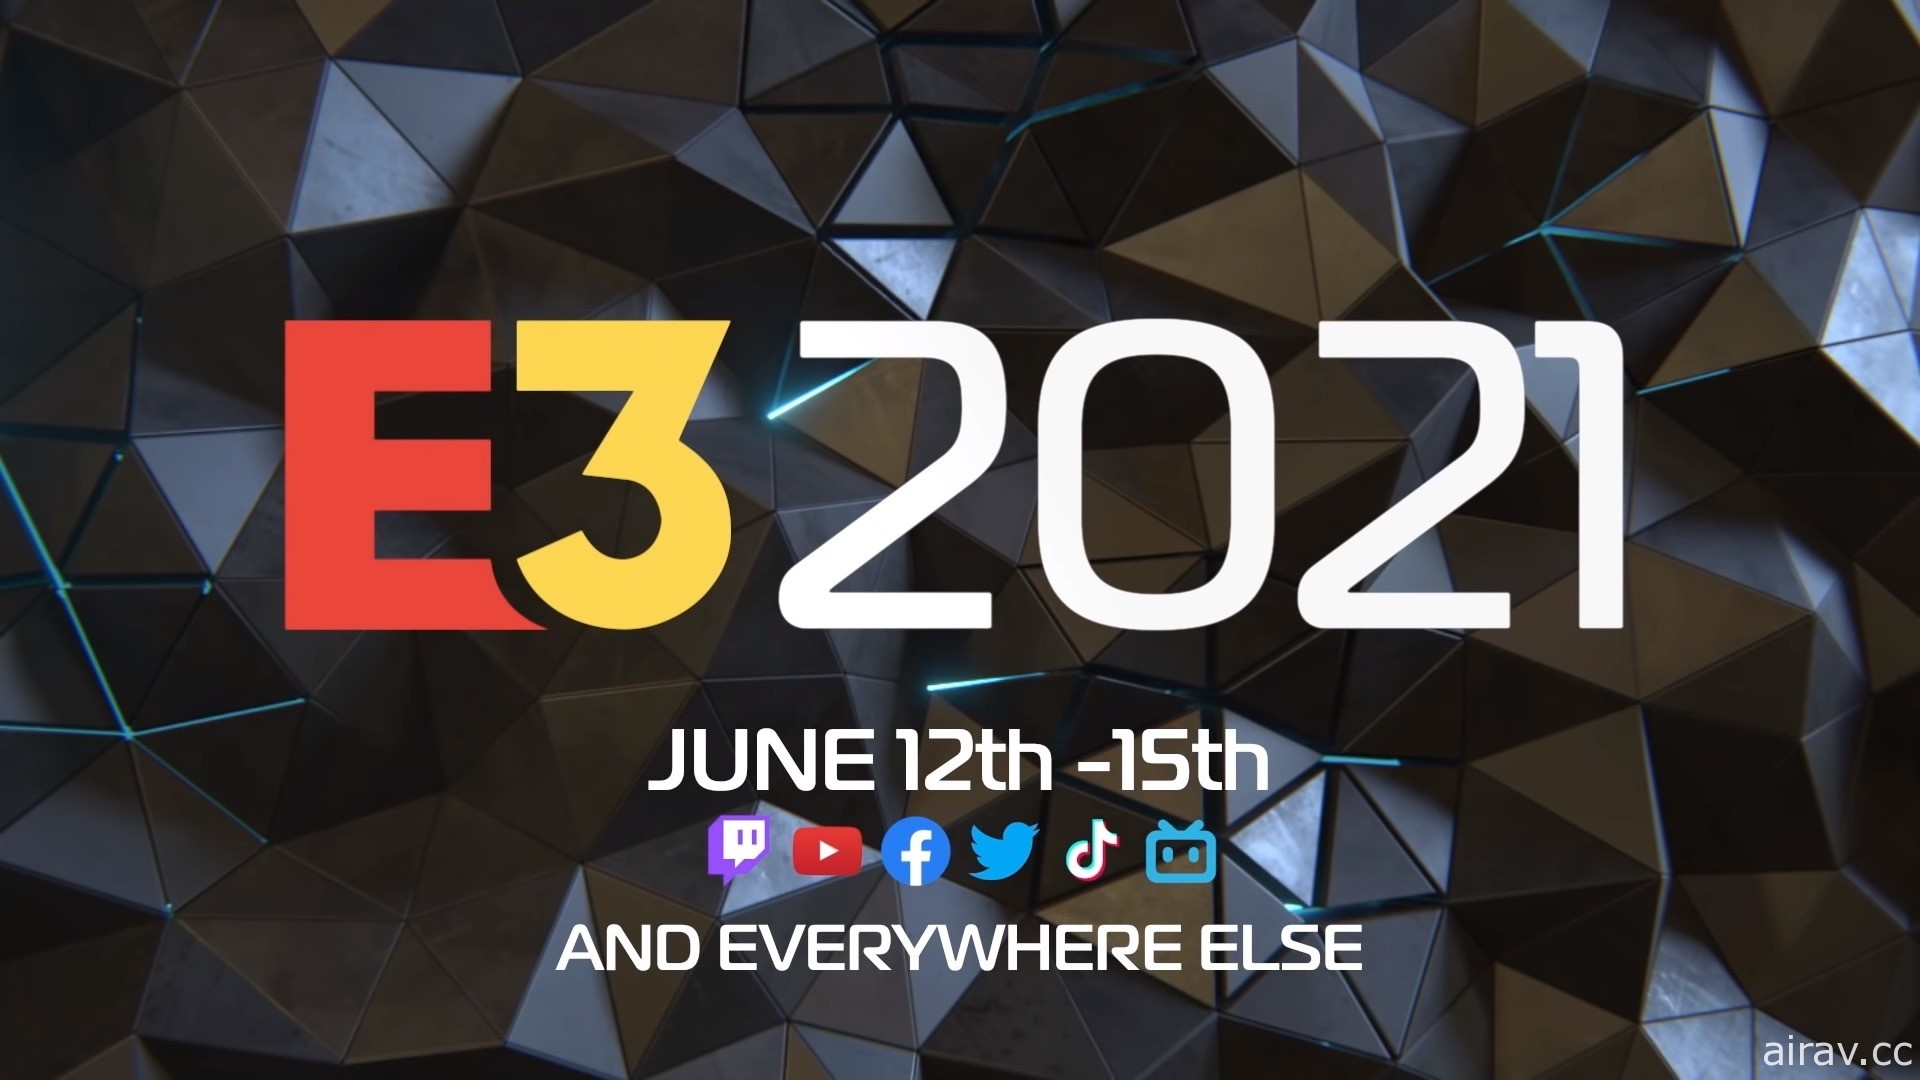 【GNN 大調查】2021 年 E3 展最期待遊戲與最喜歡 / 最失望發表會票選結果出爐